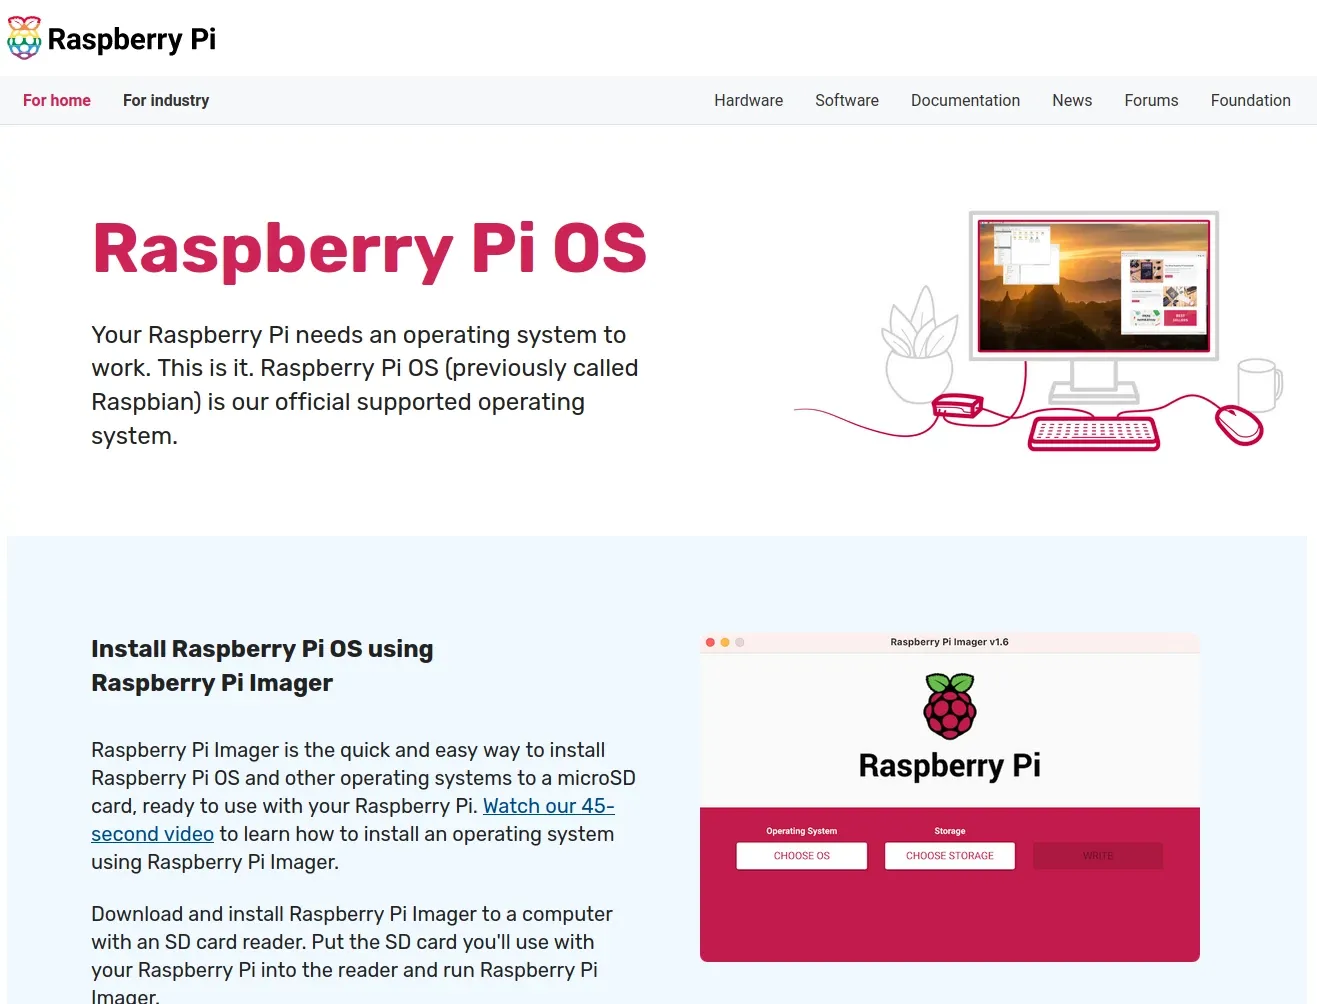 Screenshot of the raspberry pi os website